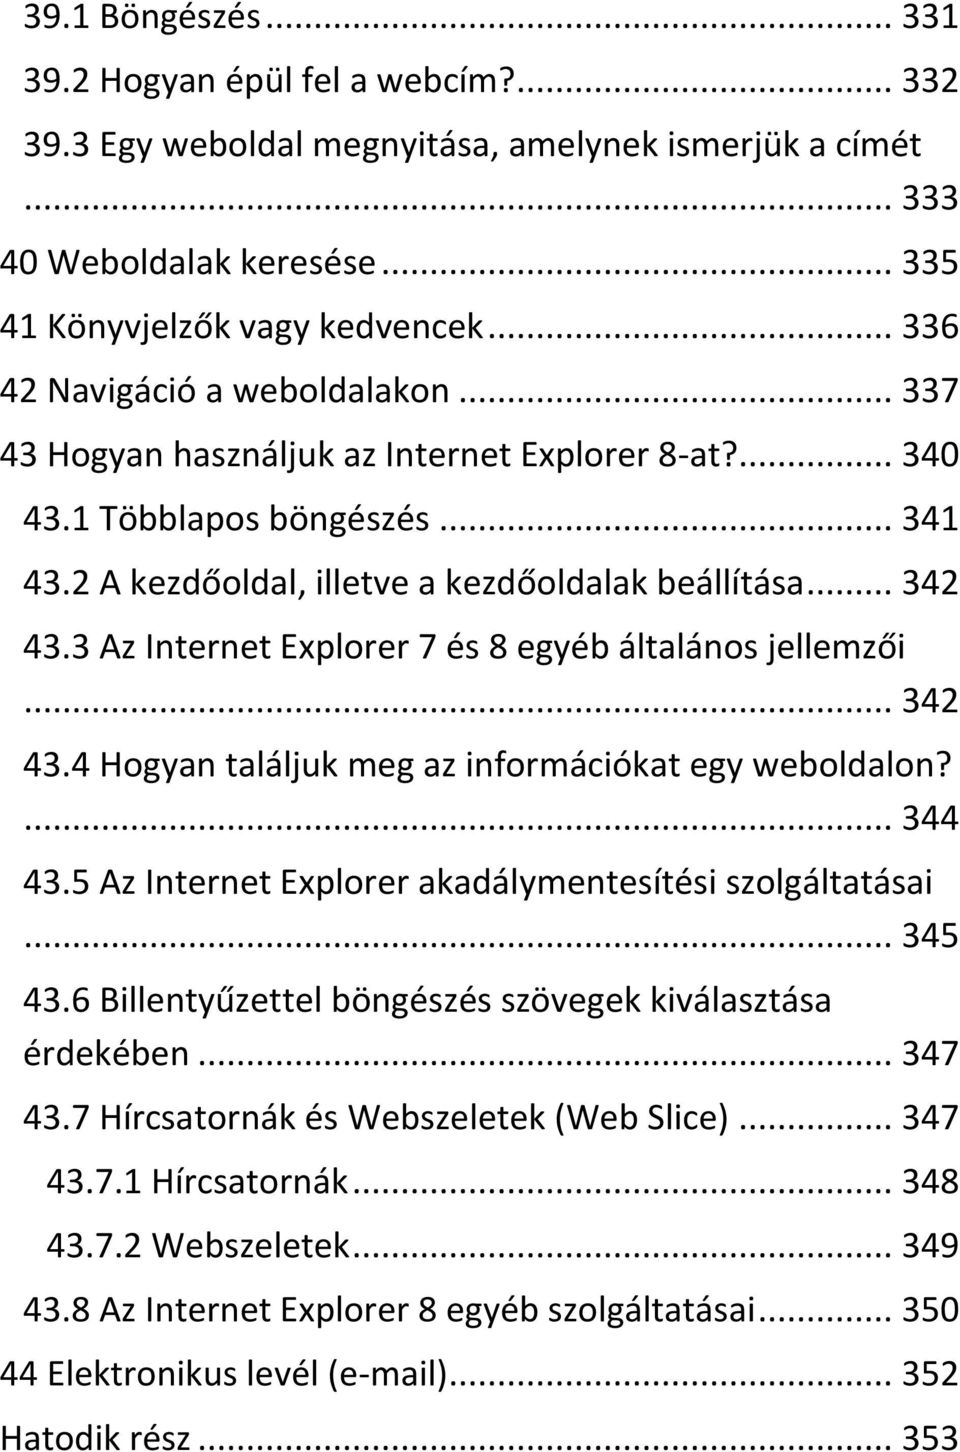 3 Az Internet Explorer 7 és 8 egyéb általános jellemzői... 342 43.4 Hogyan találjuk meg az információkat egy weboldalon?... 344 43.5 Az Internet Explorer akadálymentesítési szolgáltatásai... 345 43.